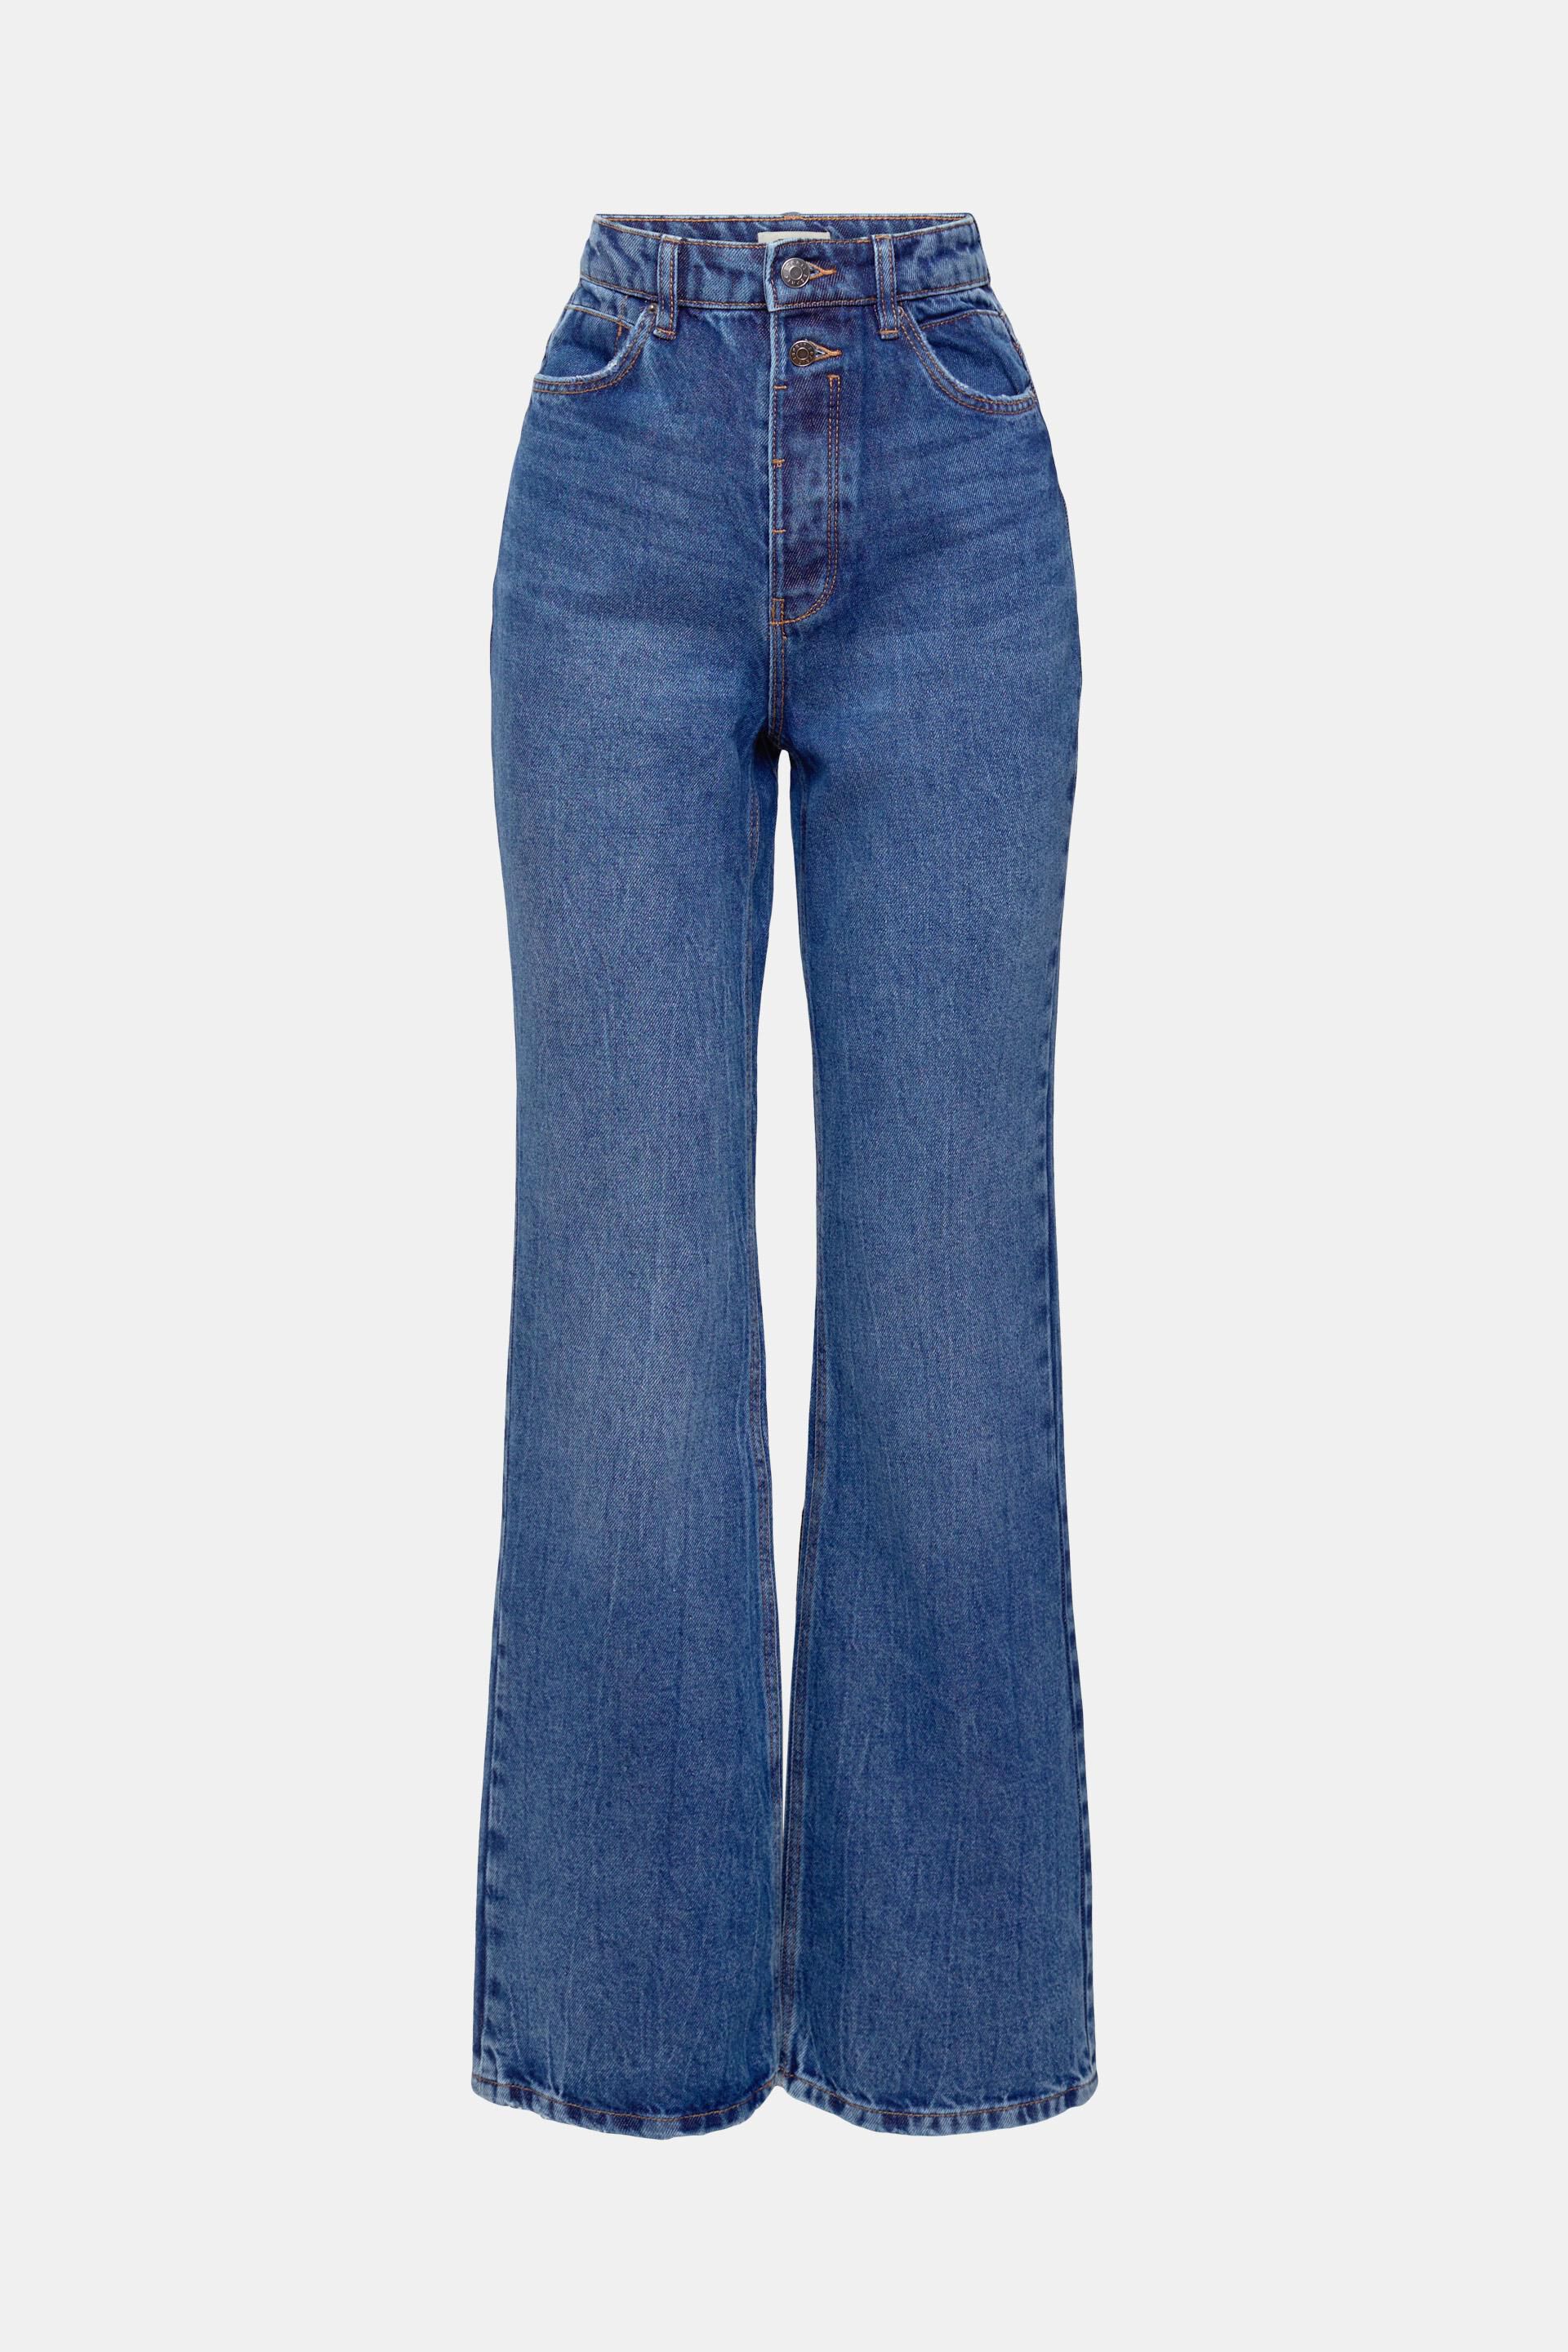 Q/S designed by Nu 20% Korting Cardigan In Structuur-look in het Zwart Dames Kleding voor voor Jeans voor Bootcut jeans 